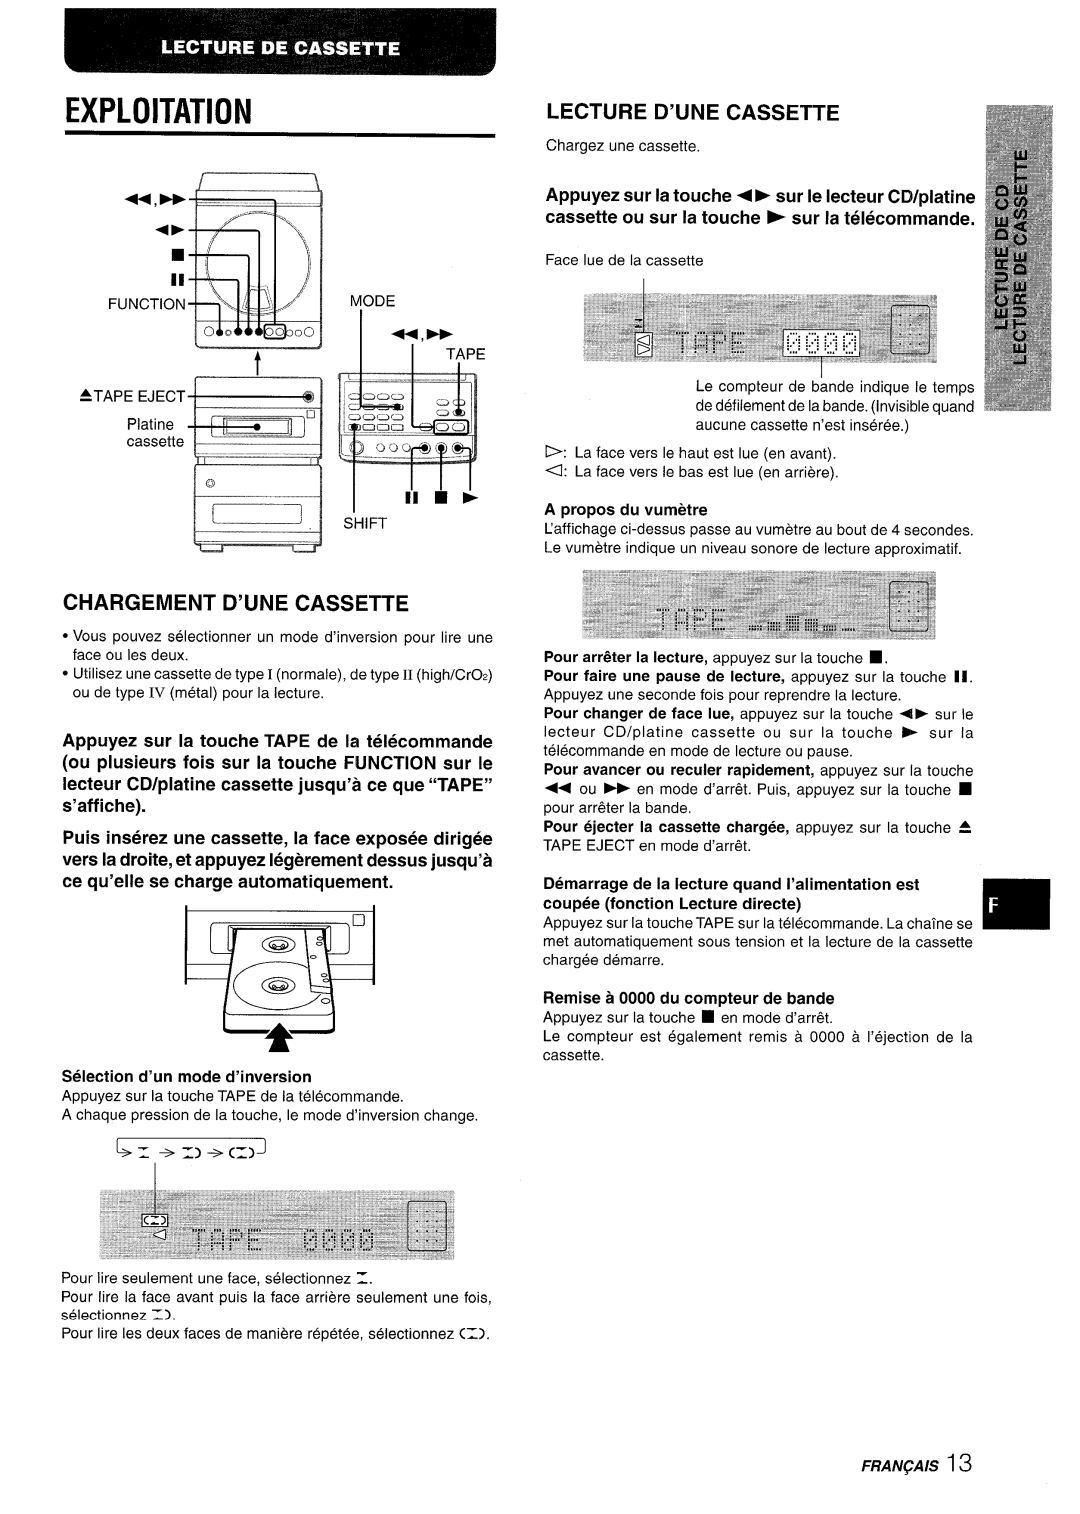 Aiwa XR-M88 manual Chargement D’Une Cassette, ‘=---””, Exploitation 